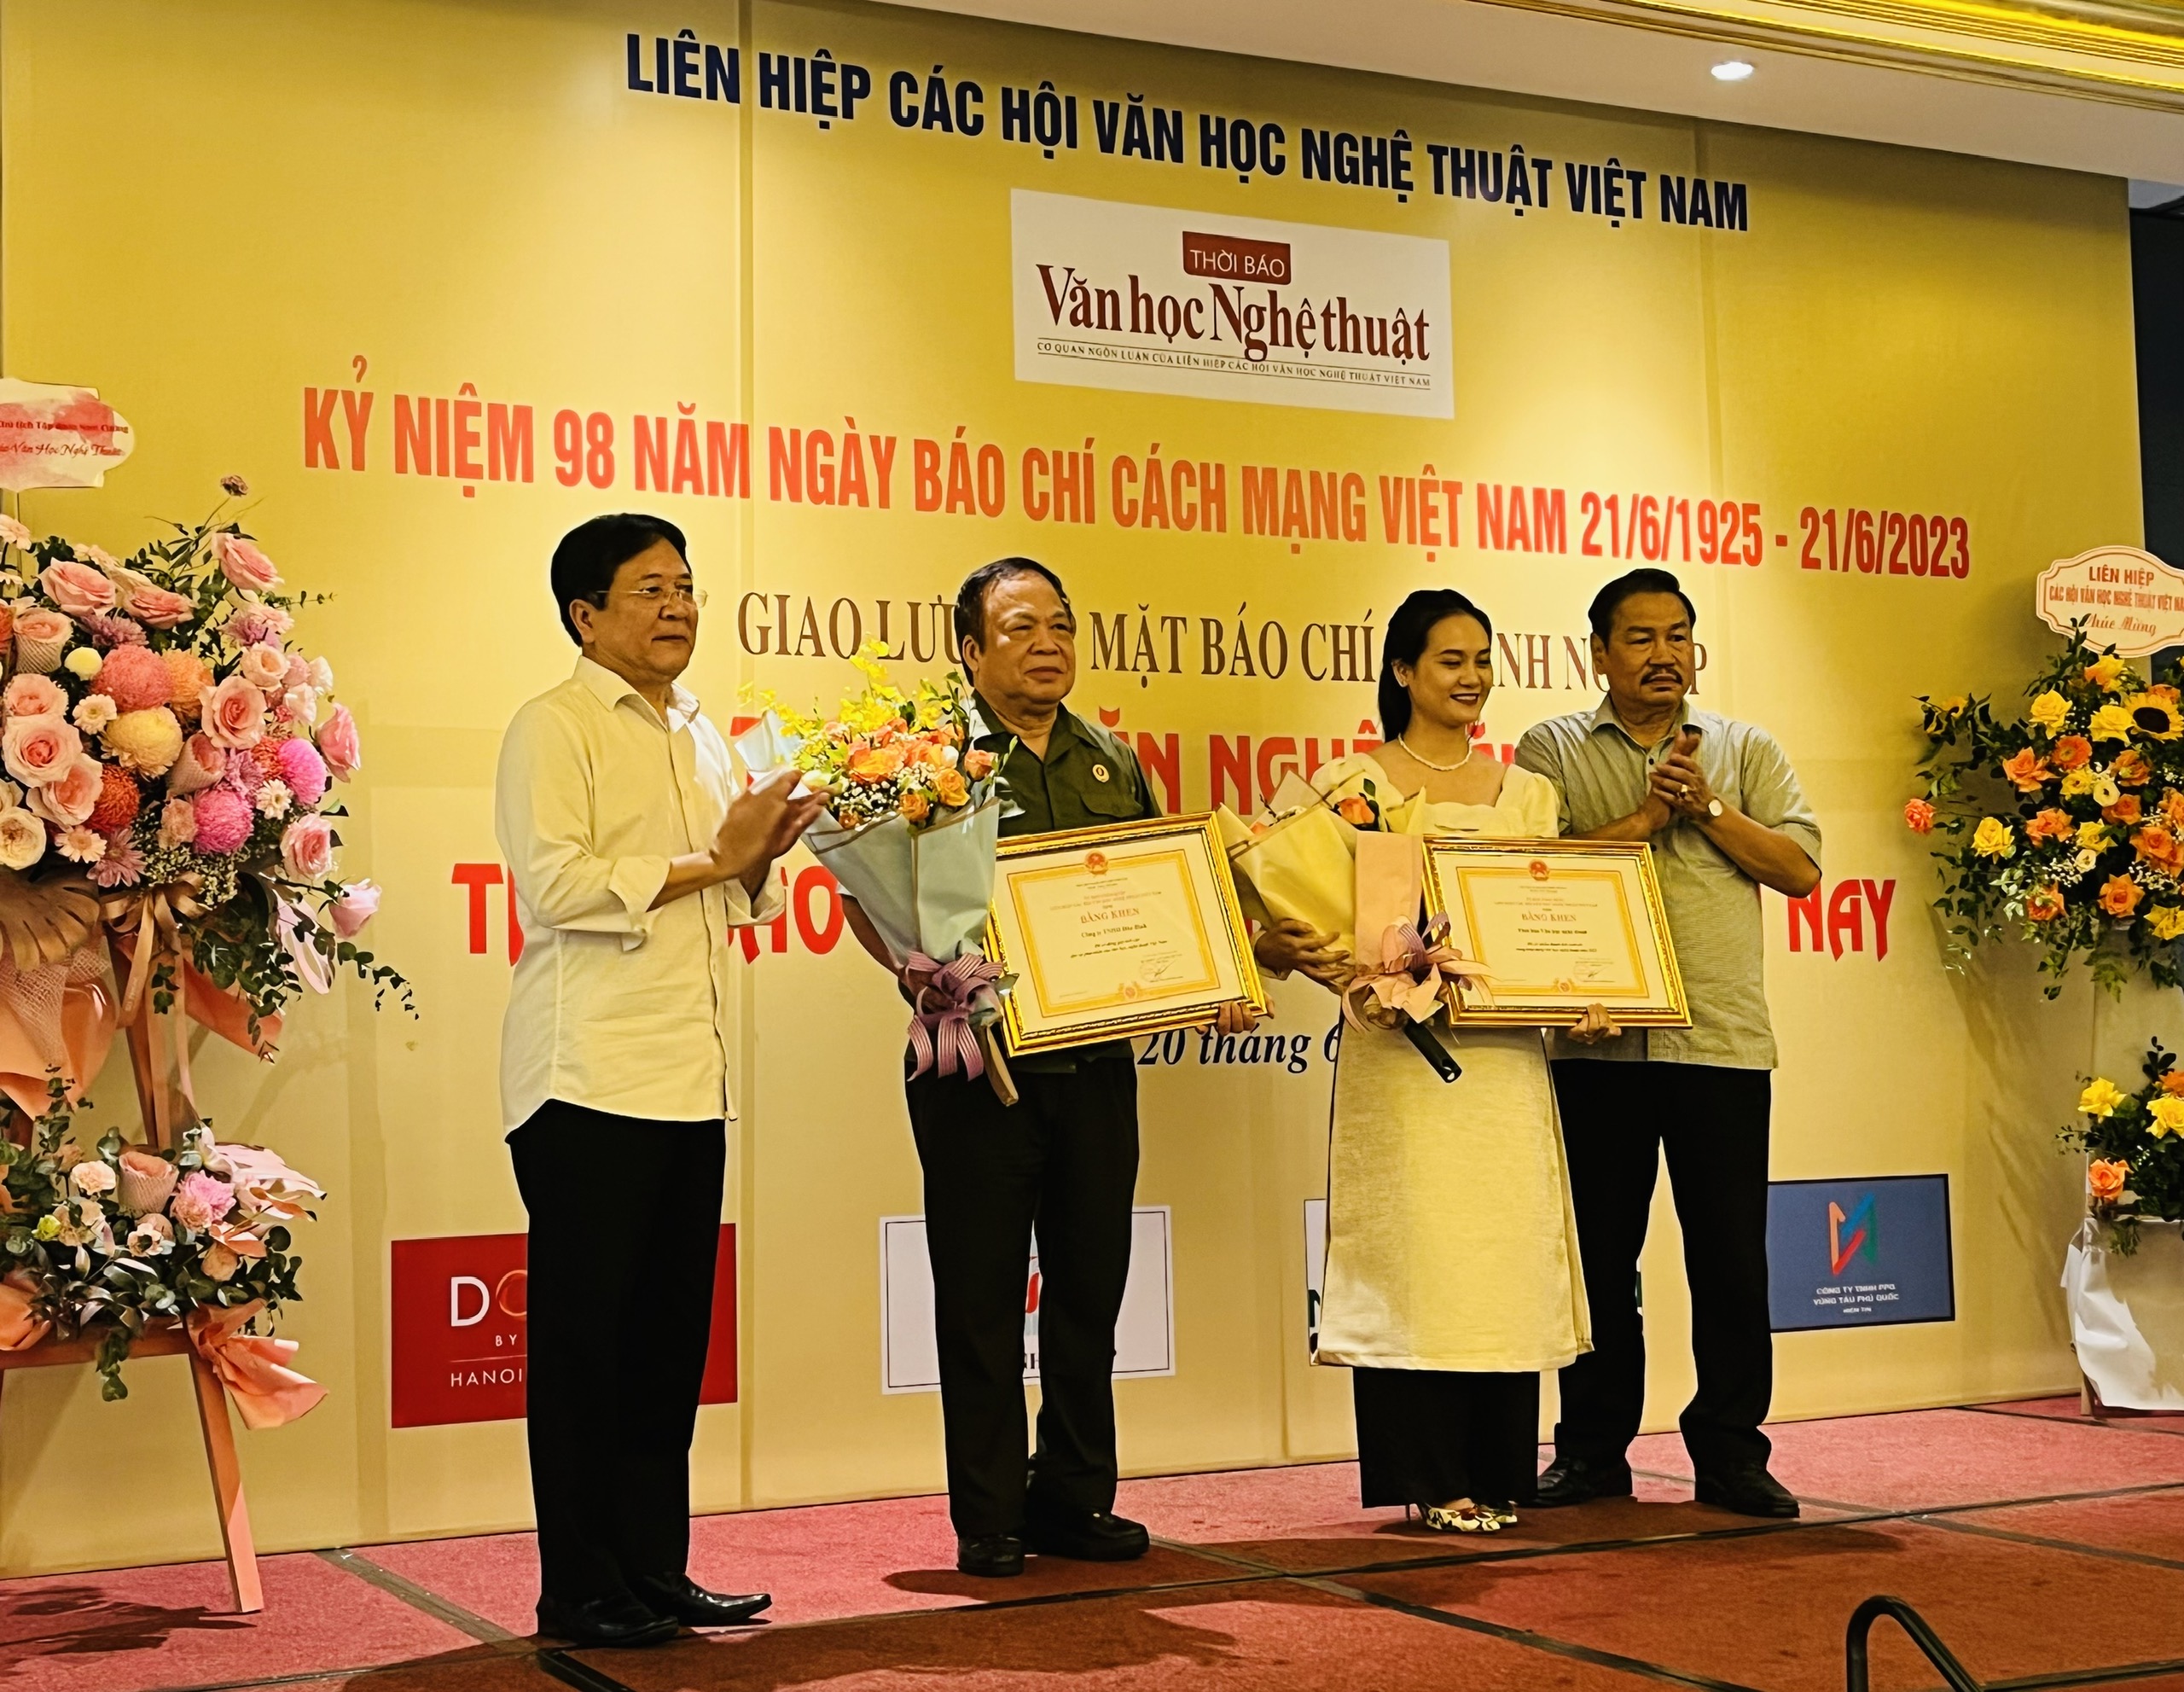 Phát huy thế mạnh để phát triển báo chí của Liên hiệp các Hội Văn học nghệ thuật Việt Nam - 5